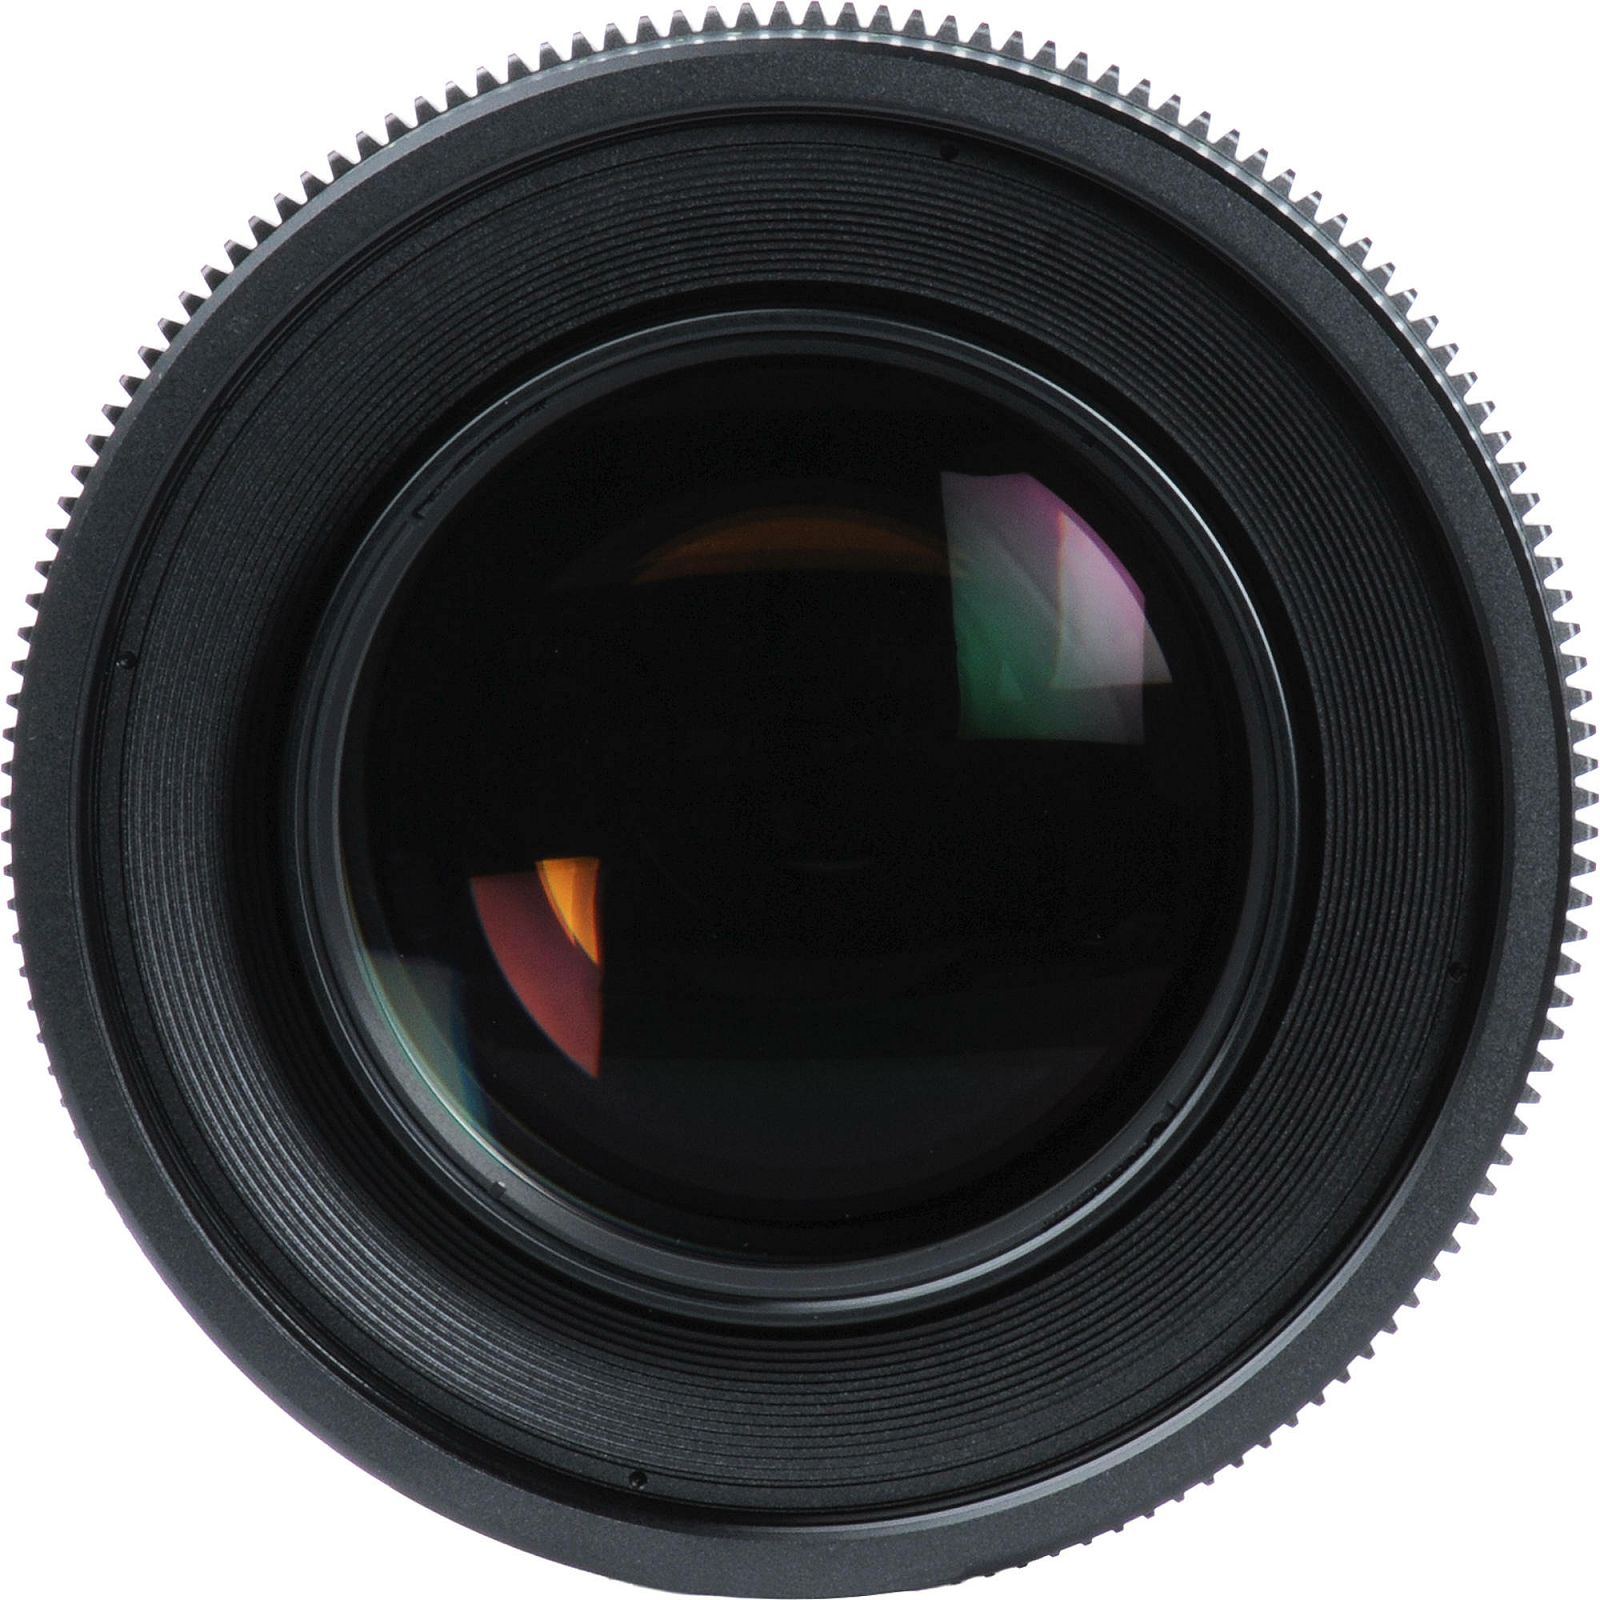 Canon Cine Lens KIT CN-E 24/85/135 Bundle Primes lens set (CN-E 24mm T1.5 L F + CN-E 85mm L F + CN-E 135mm T2.2 L F) (8326B007AA)